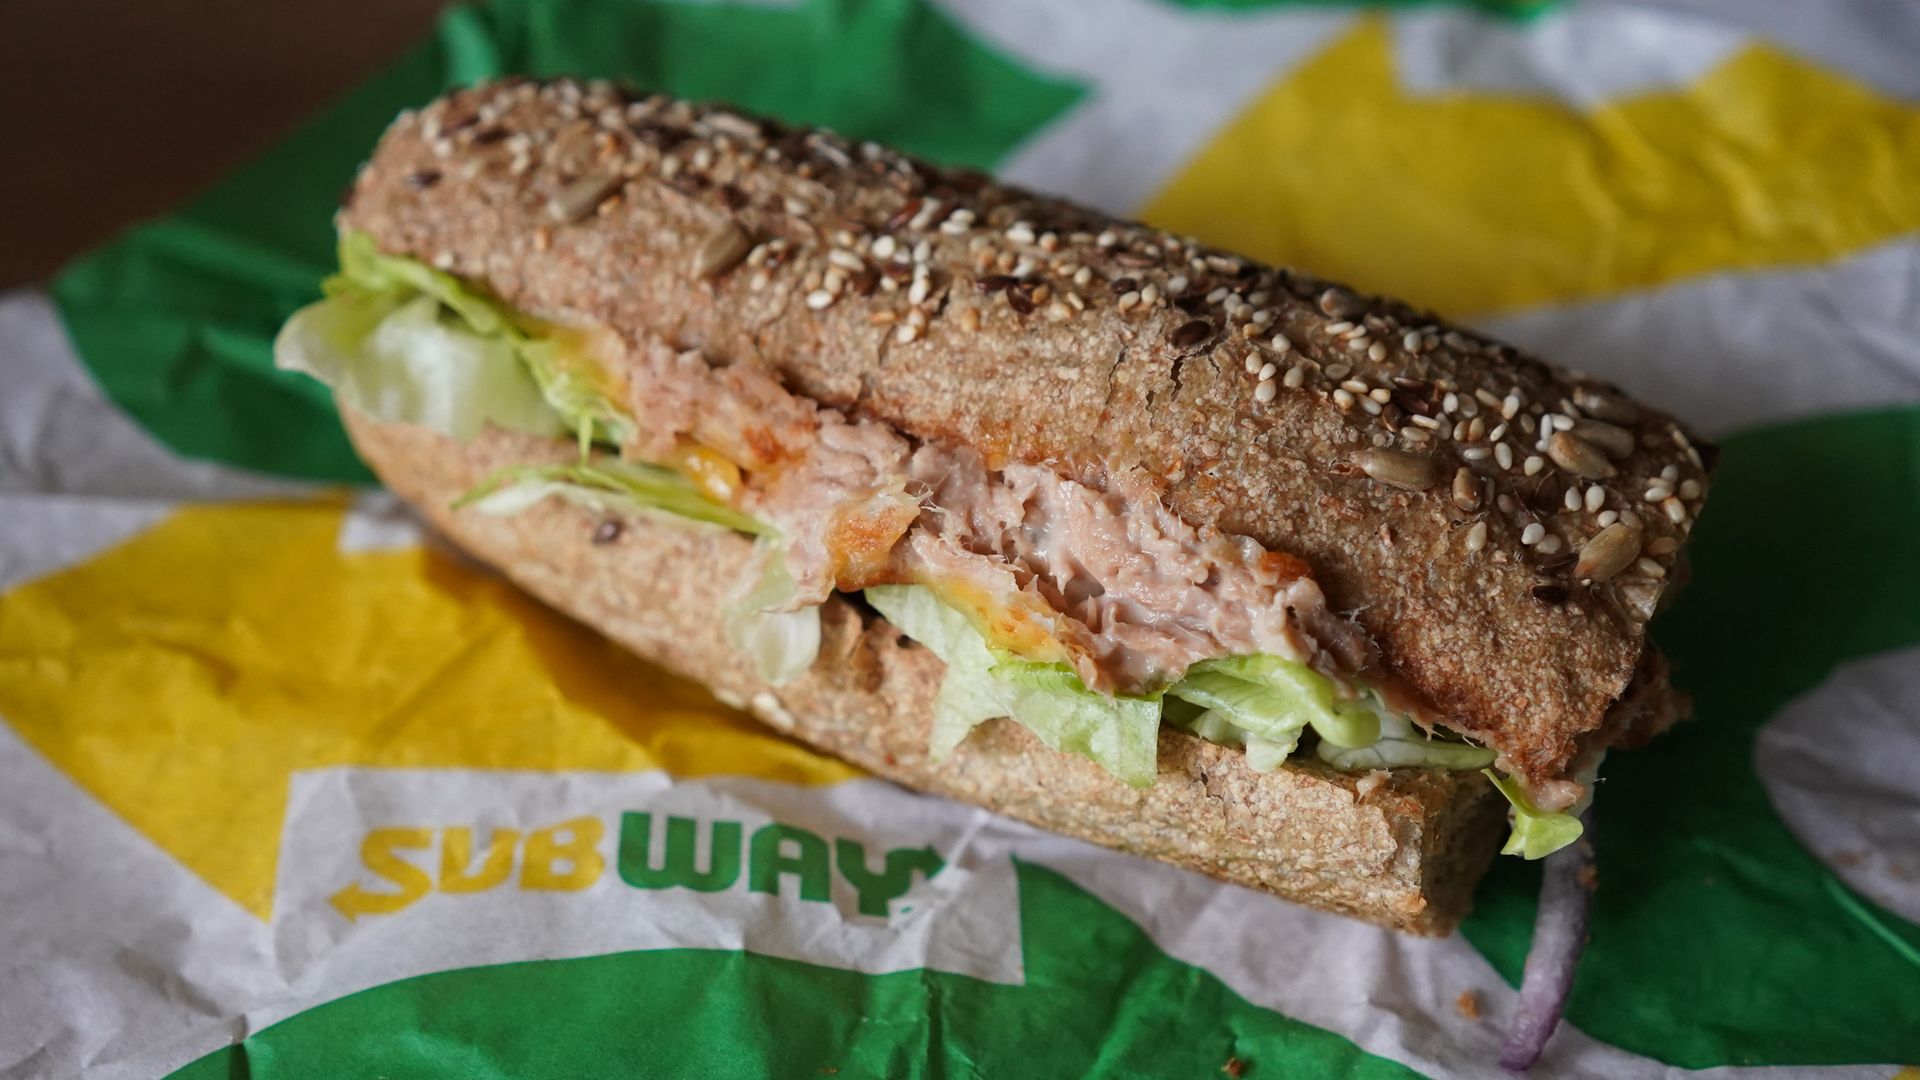 Subway tuna sandwich